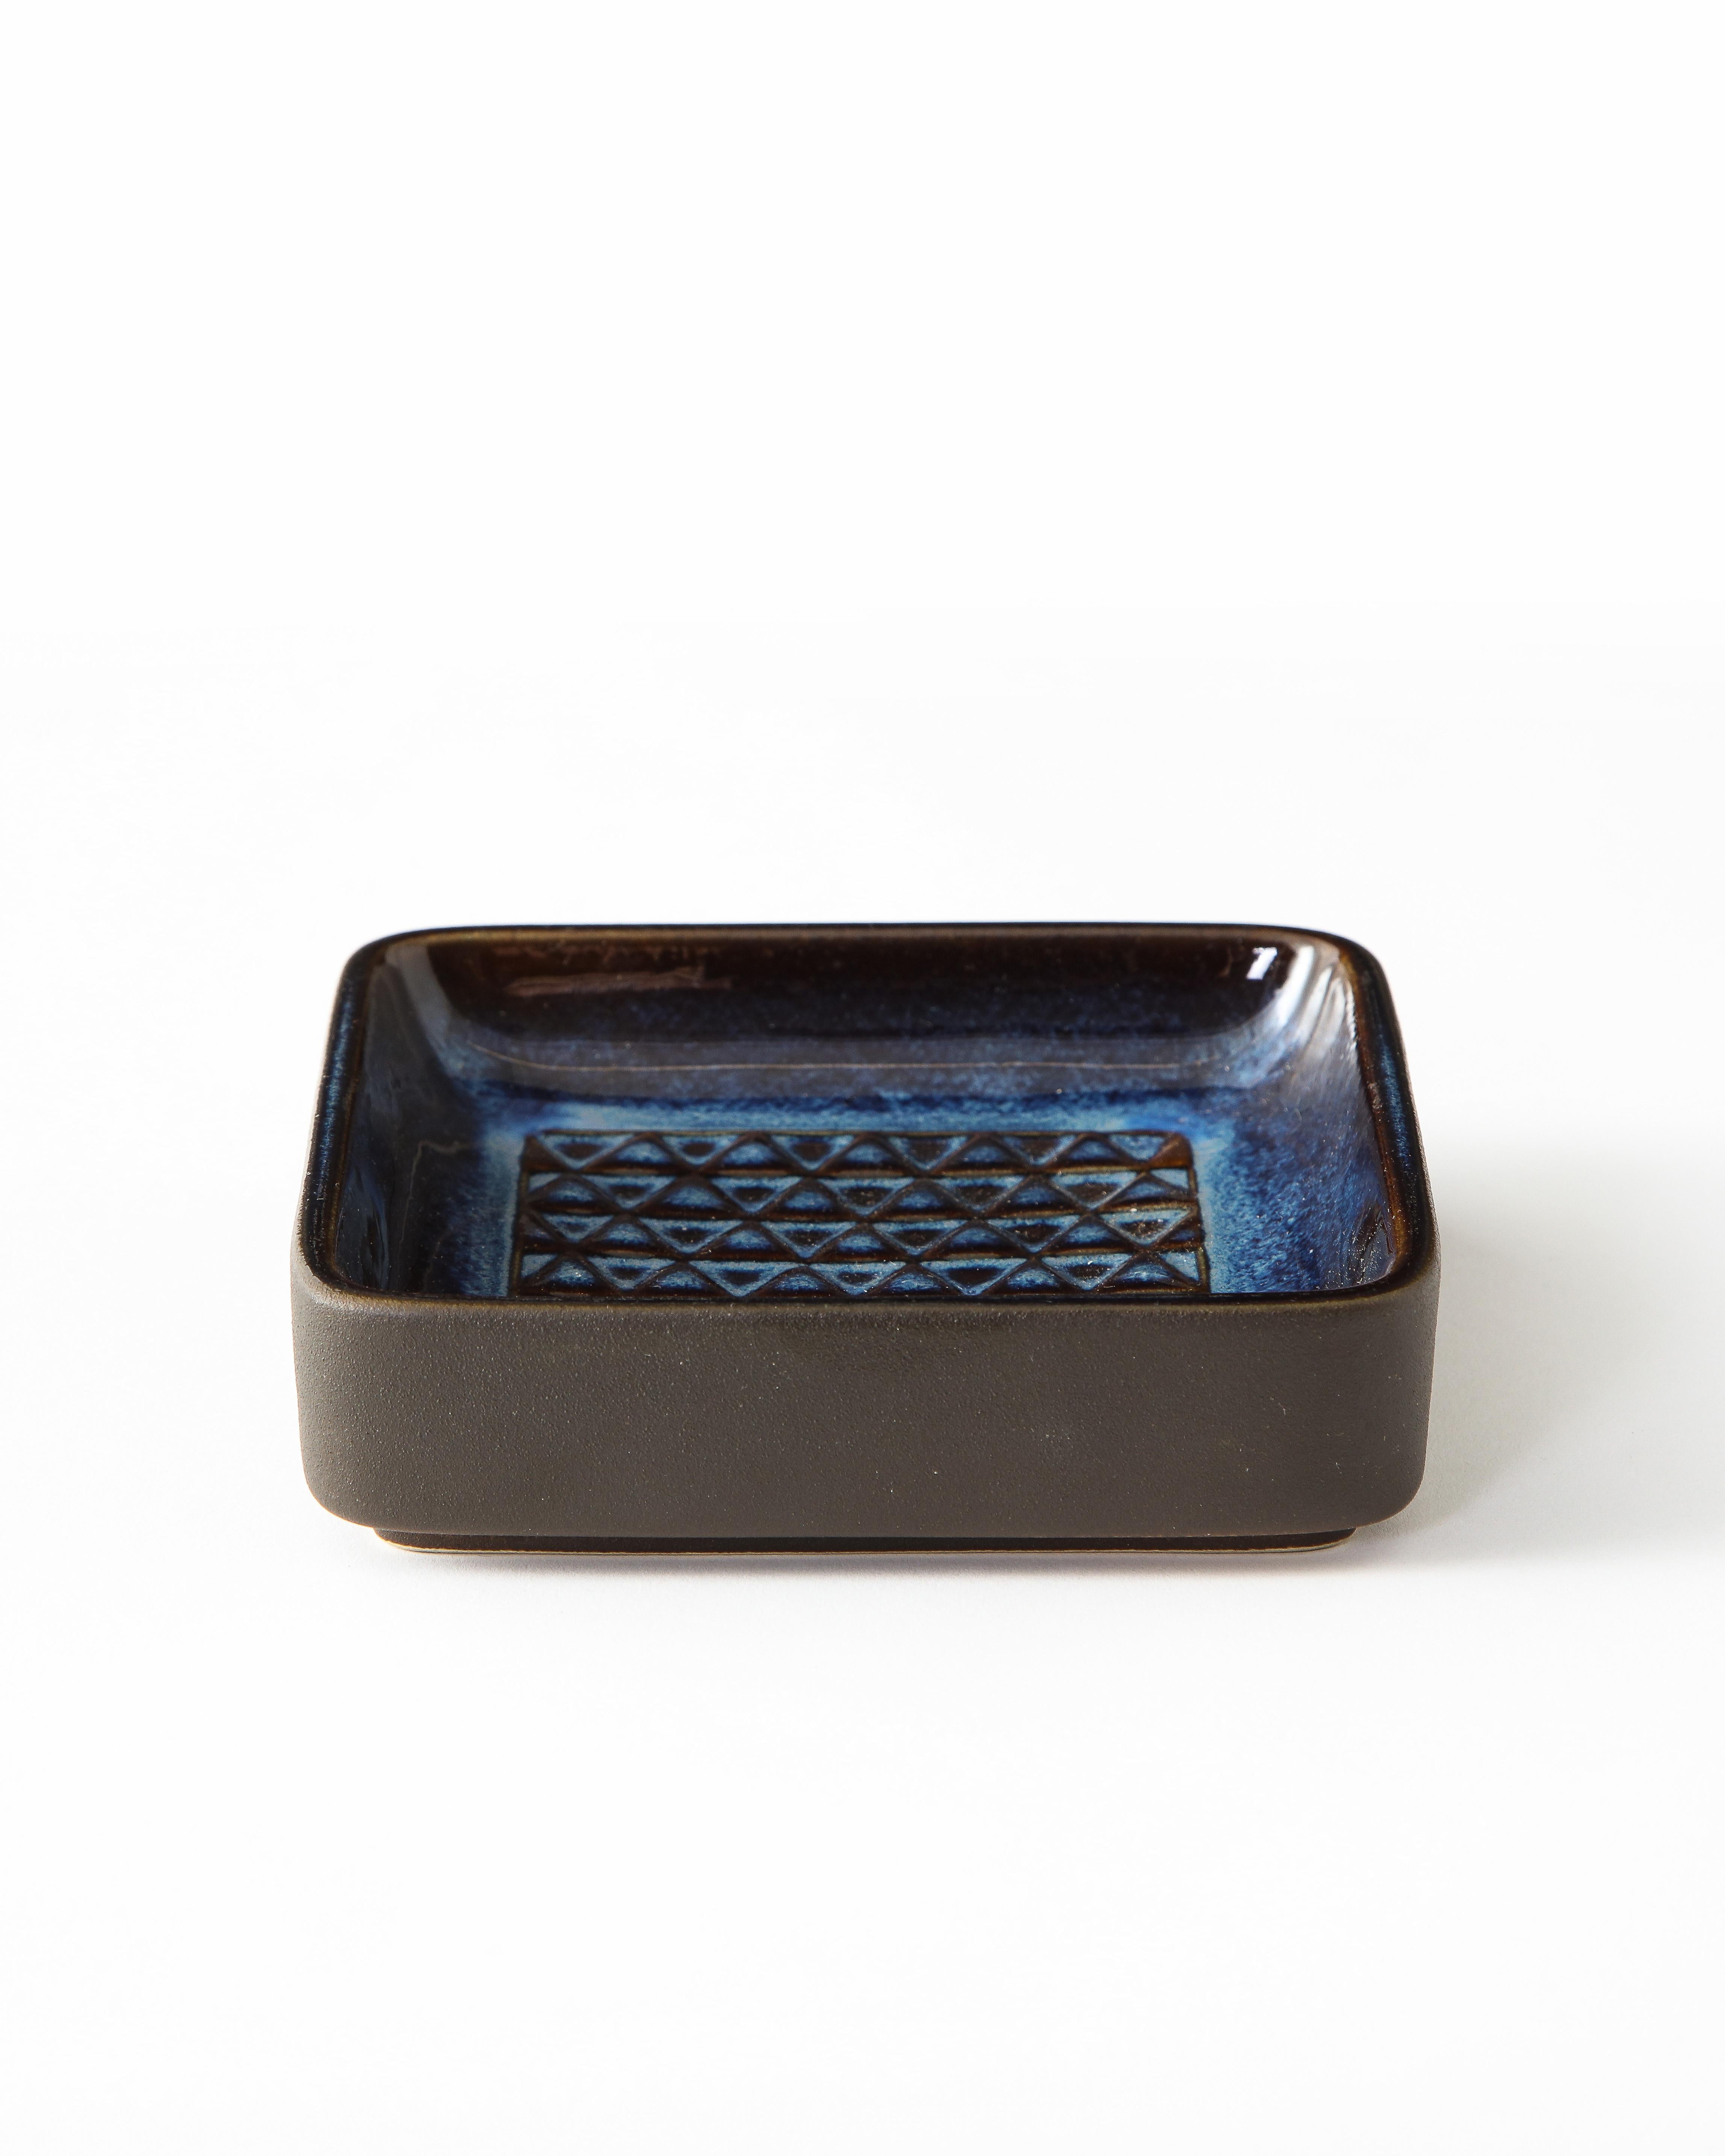 Søholm Blue Ceramic Square Dish, Denmark, 1960s 4